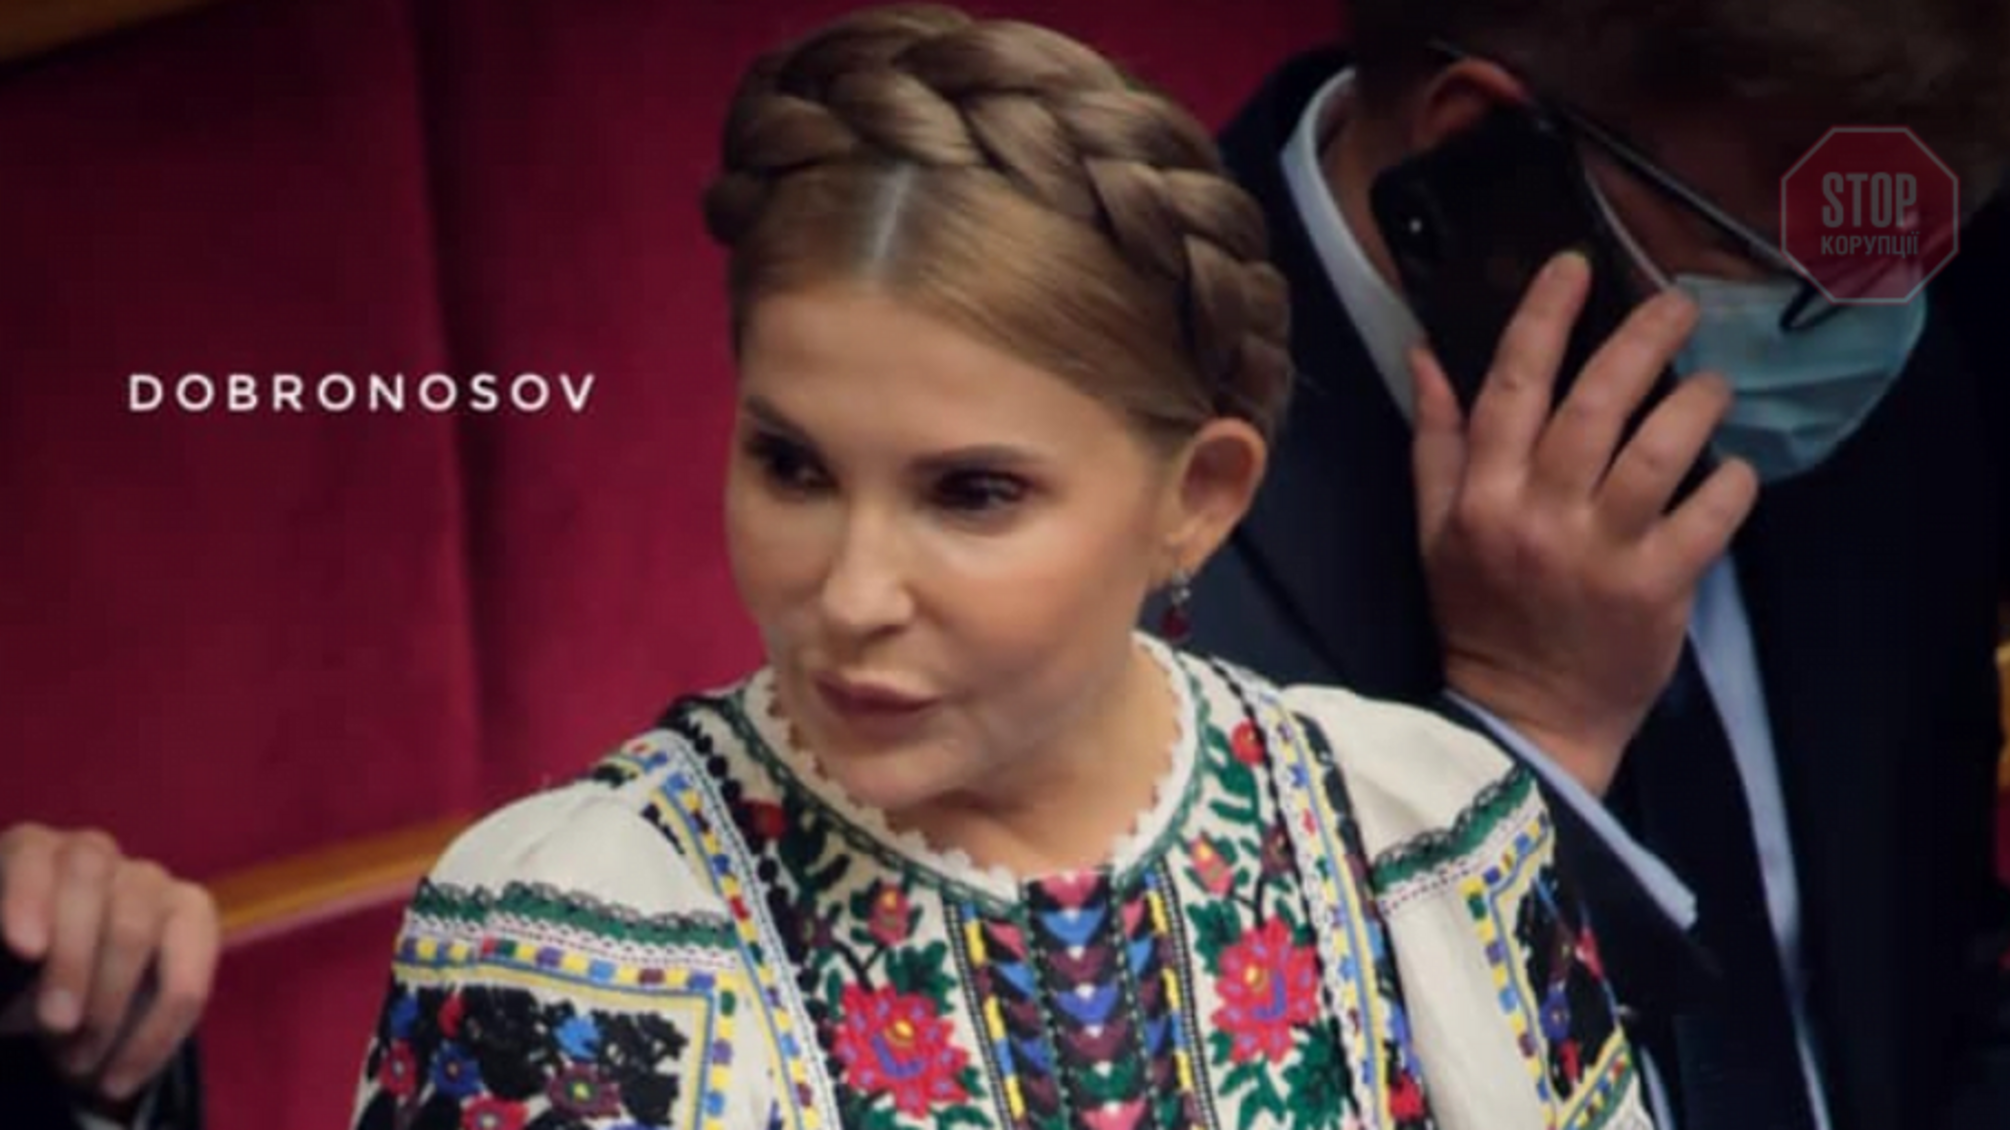 Тимошенко пришла в Раду в роскошной вышиванке за более 40 тысяч гривен (фото)